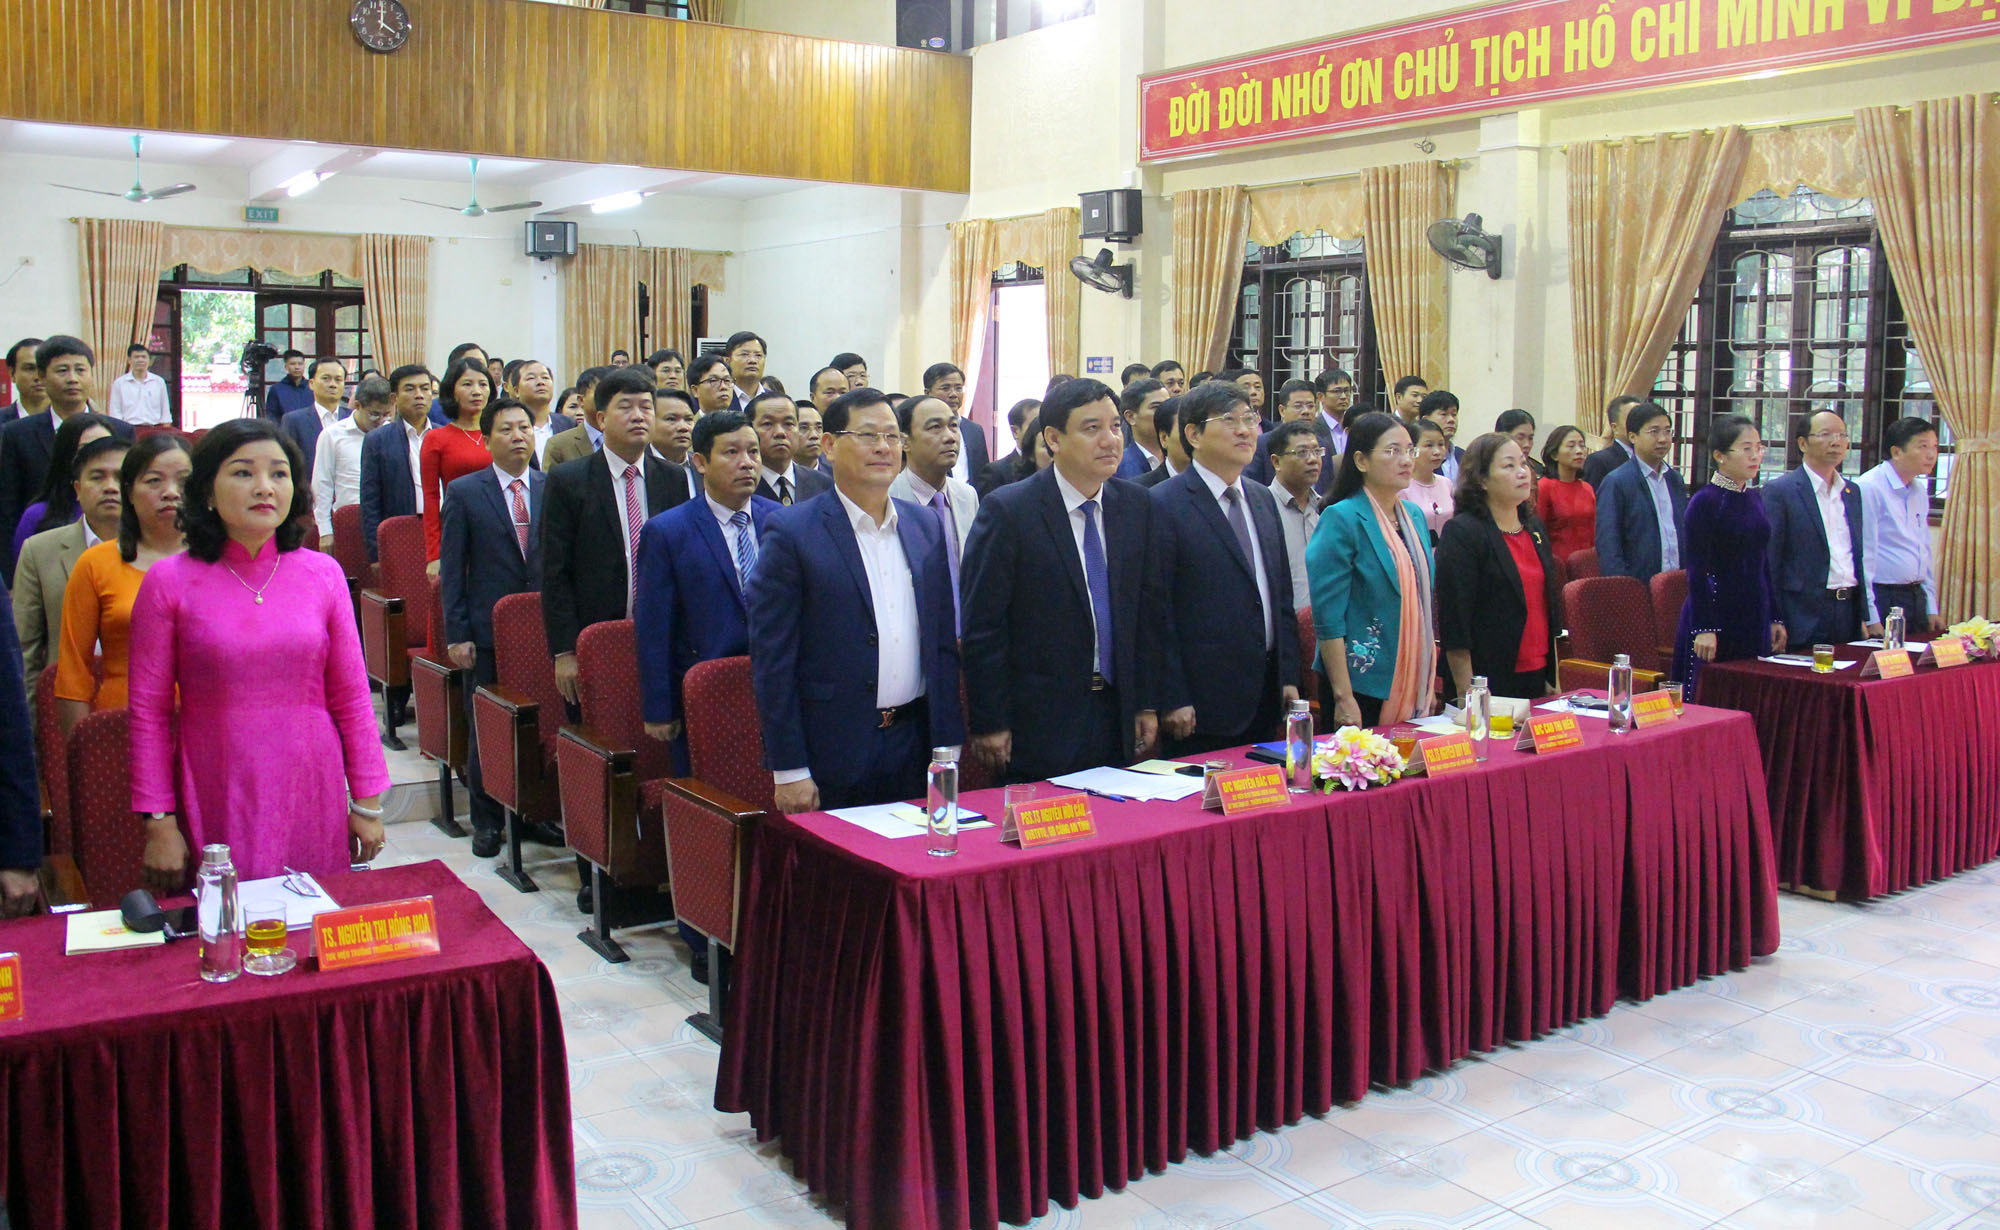 Chiều 1/12, tại Trường Chính trị tỉnh Nghệ An, Tỉnh ủy phối hợp với Học viện Chính trị quốc gia Hồ Chí Minh tổ chức Lễ Bế giảng lớp bồi dưỡng cán bộ quy hoạch Ủy viên Ban Chấp hành Đảng bộ tỉnh, nhiệm kỳ 2015 - 2020 và nhiệm kỳ 2020 - 2025.